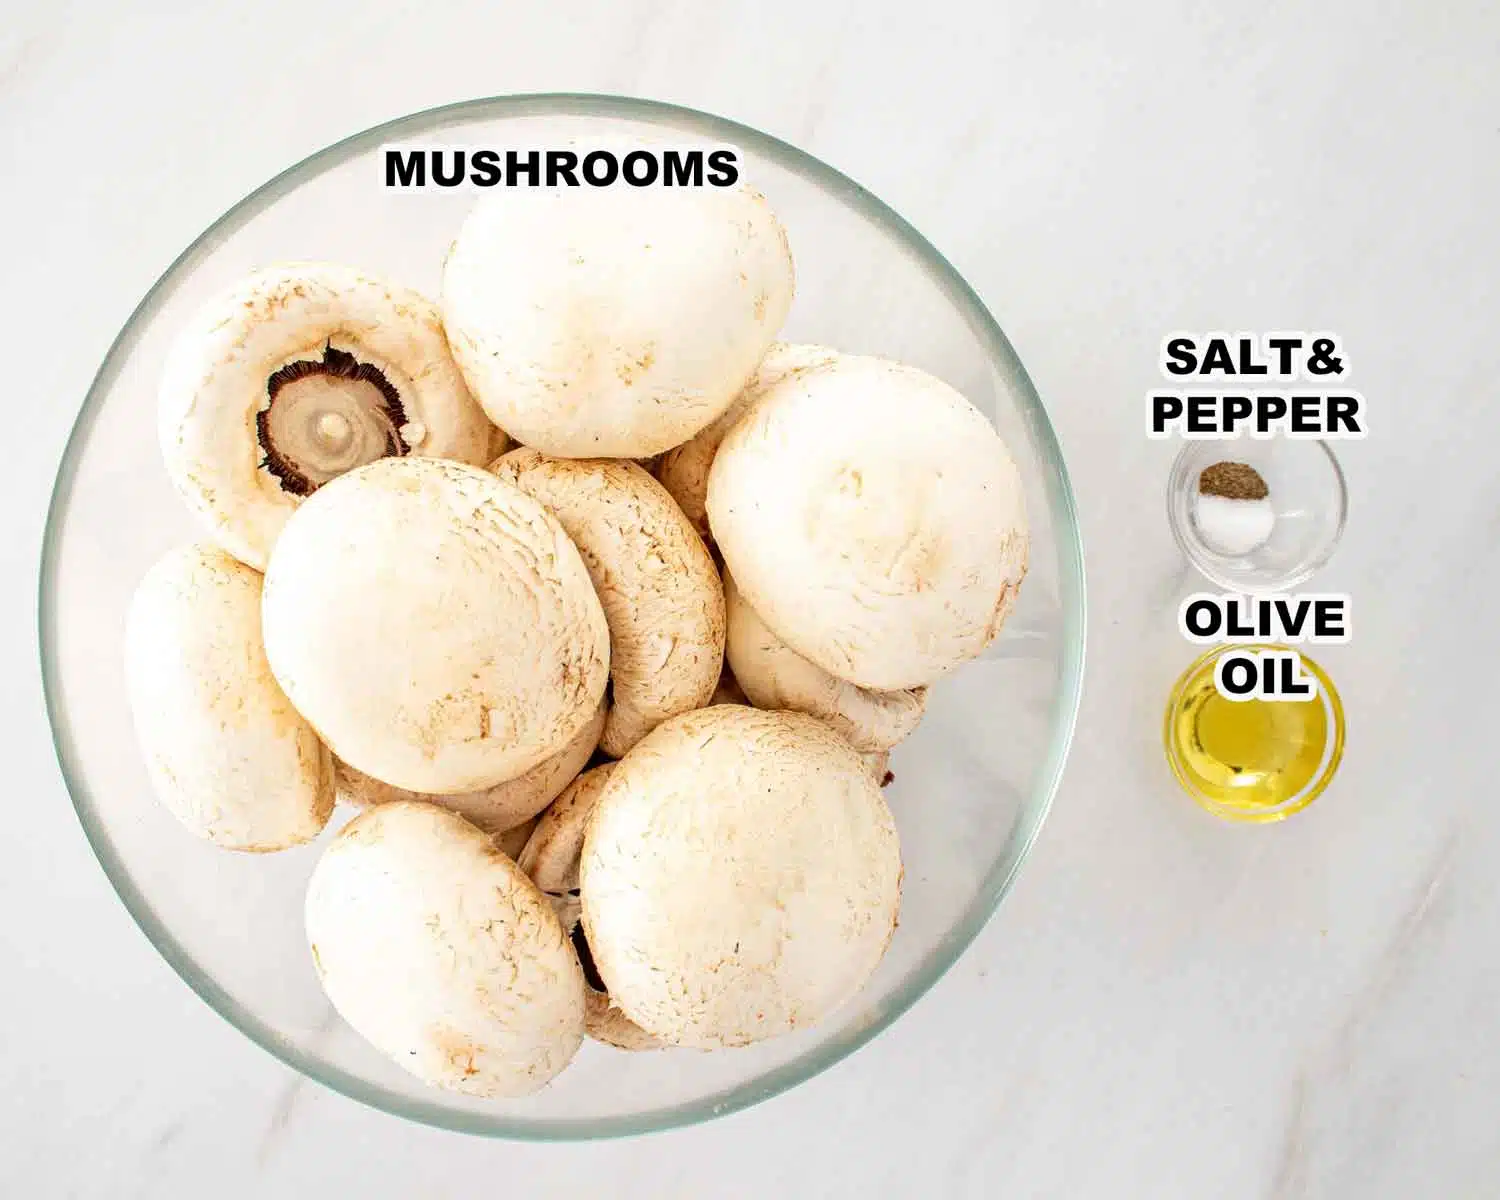 ingredients needed to make stuffed mushrooms.